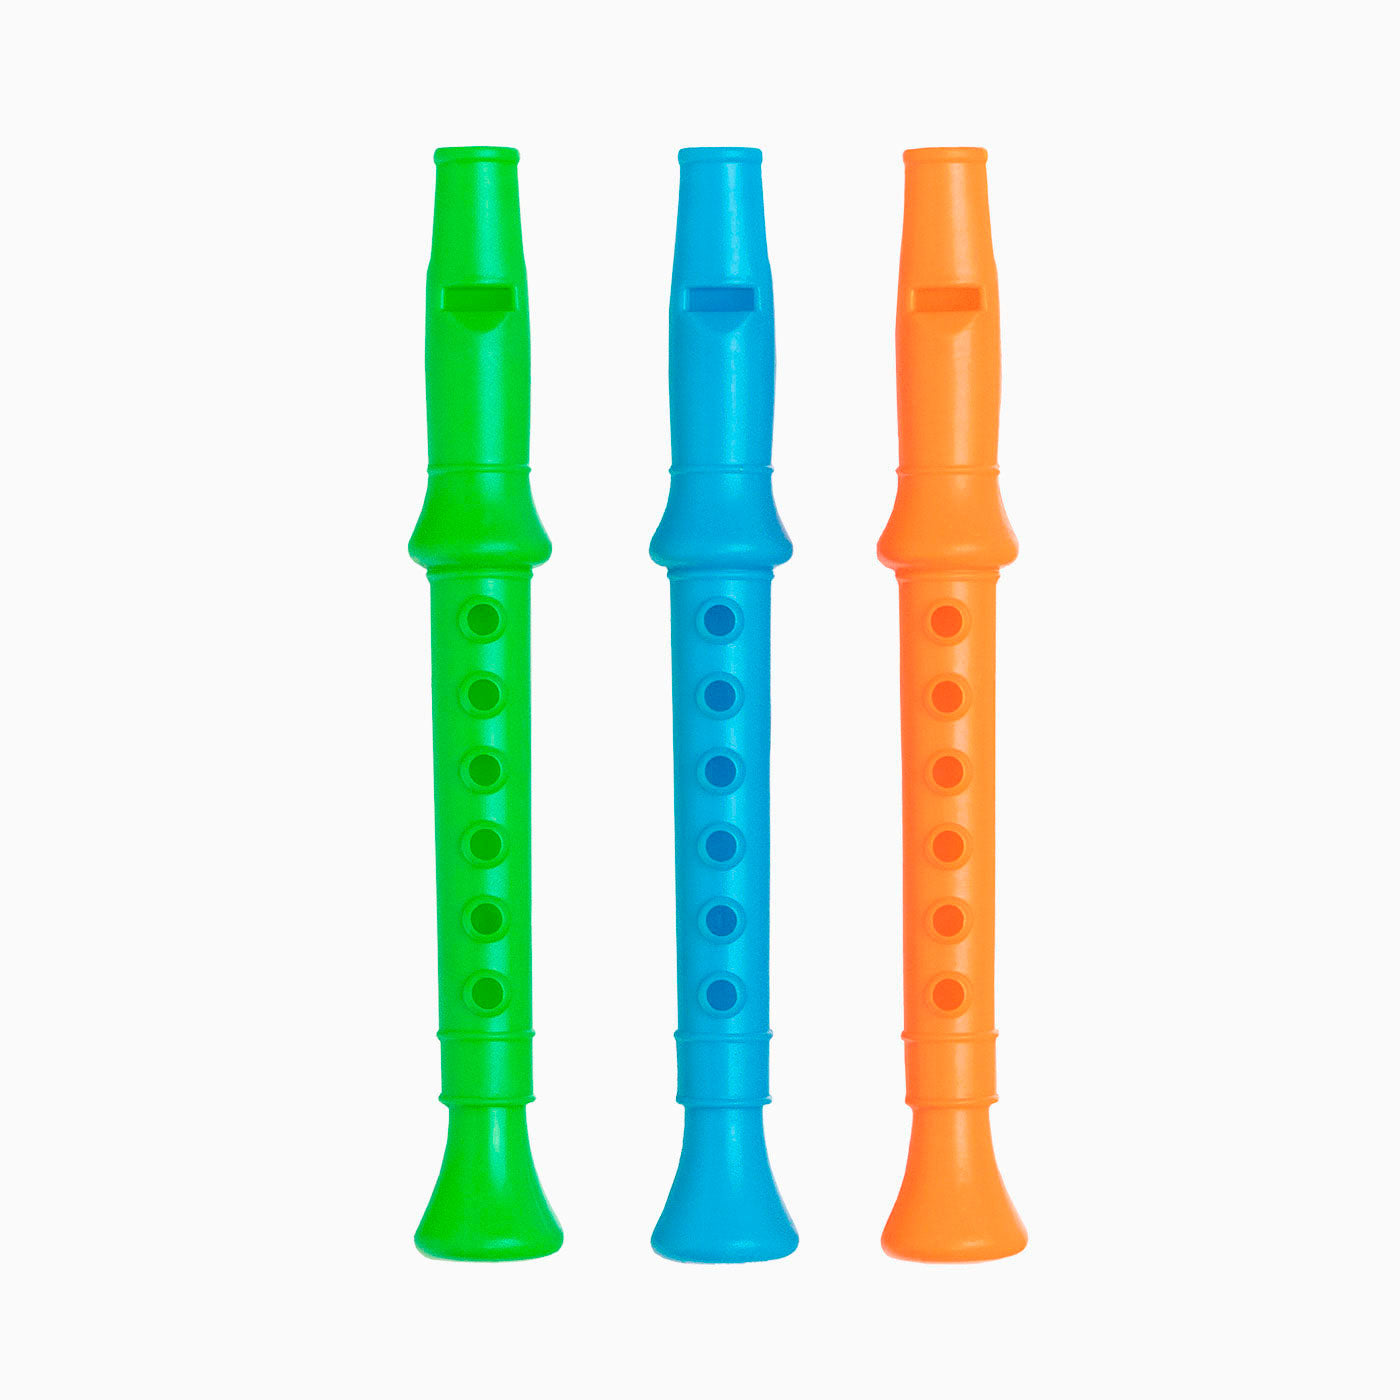 Piñata flute toy